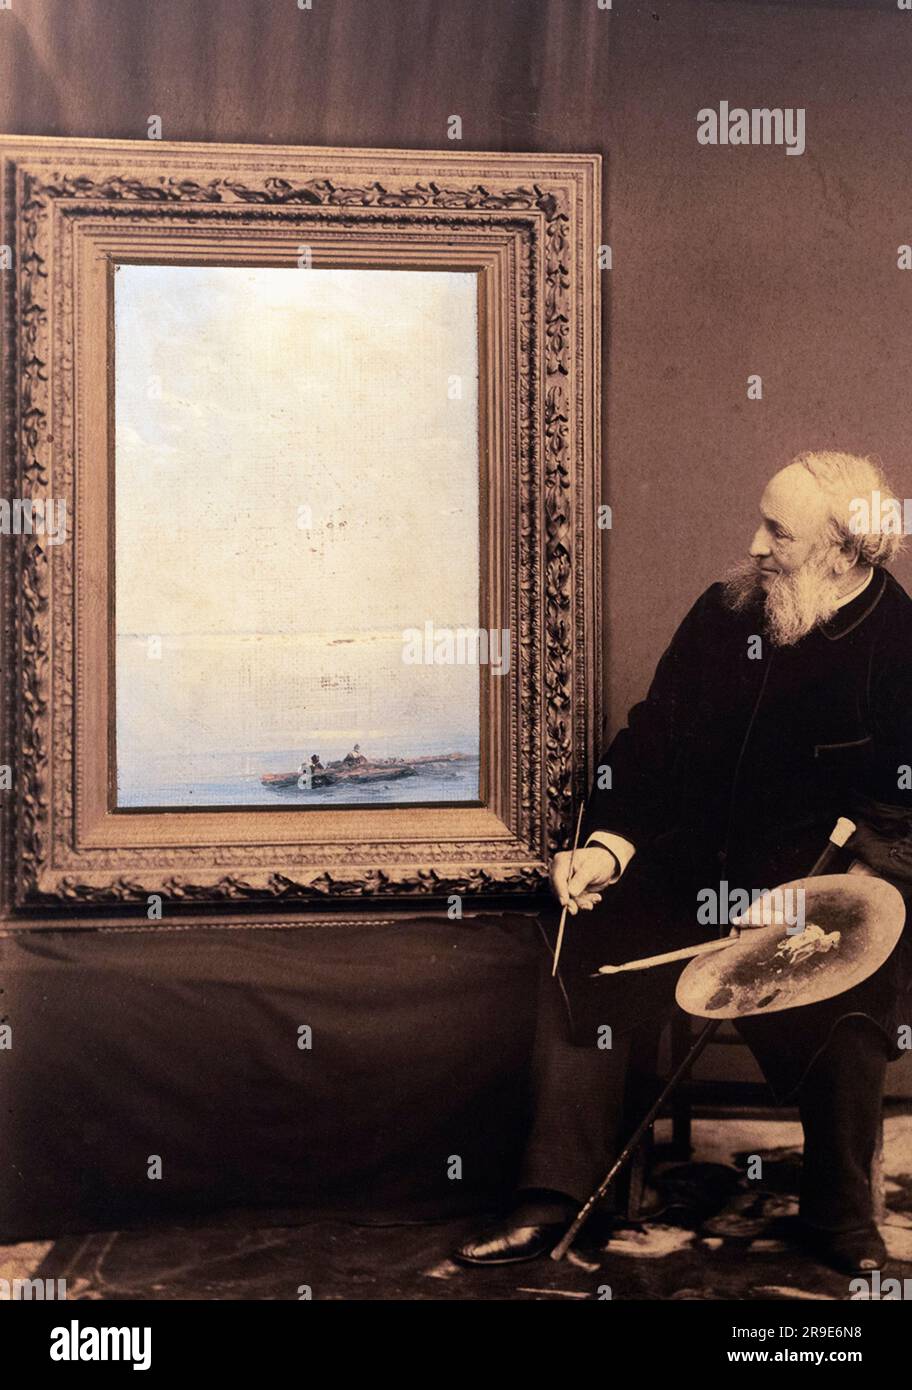 Ivan Aivazovsky. Nom complet, Ivan Konstantinovich Aivazovsky, 1817 - 1900. Artiste romantique arménien-russe célèbre pour son art marin Après une photographie contemporaine. Banque D'Images